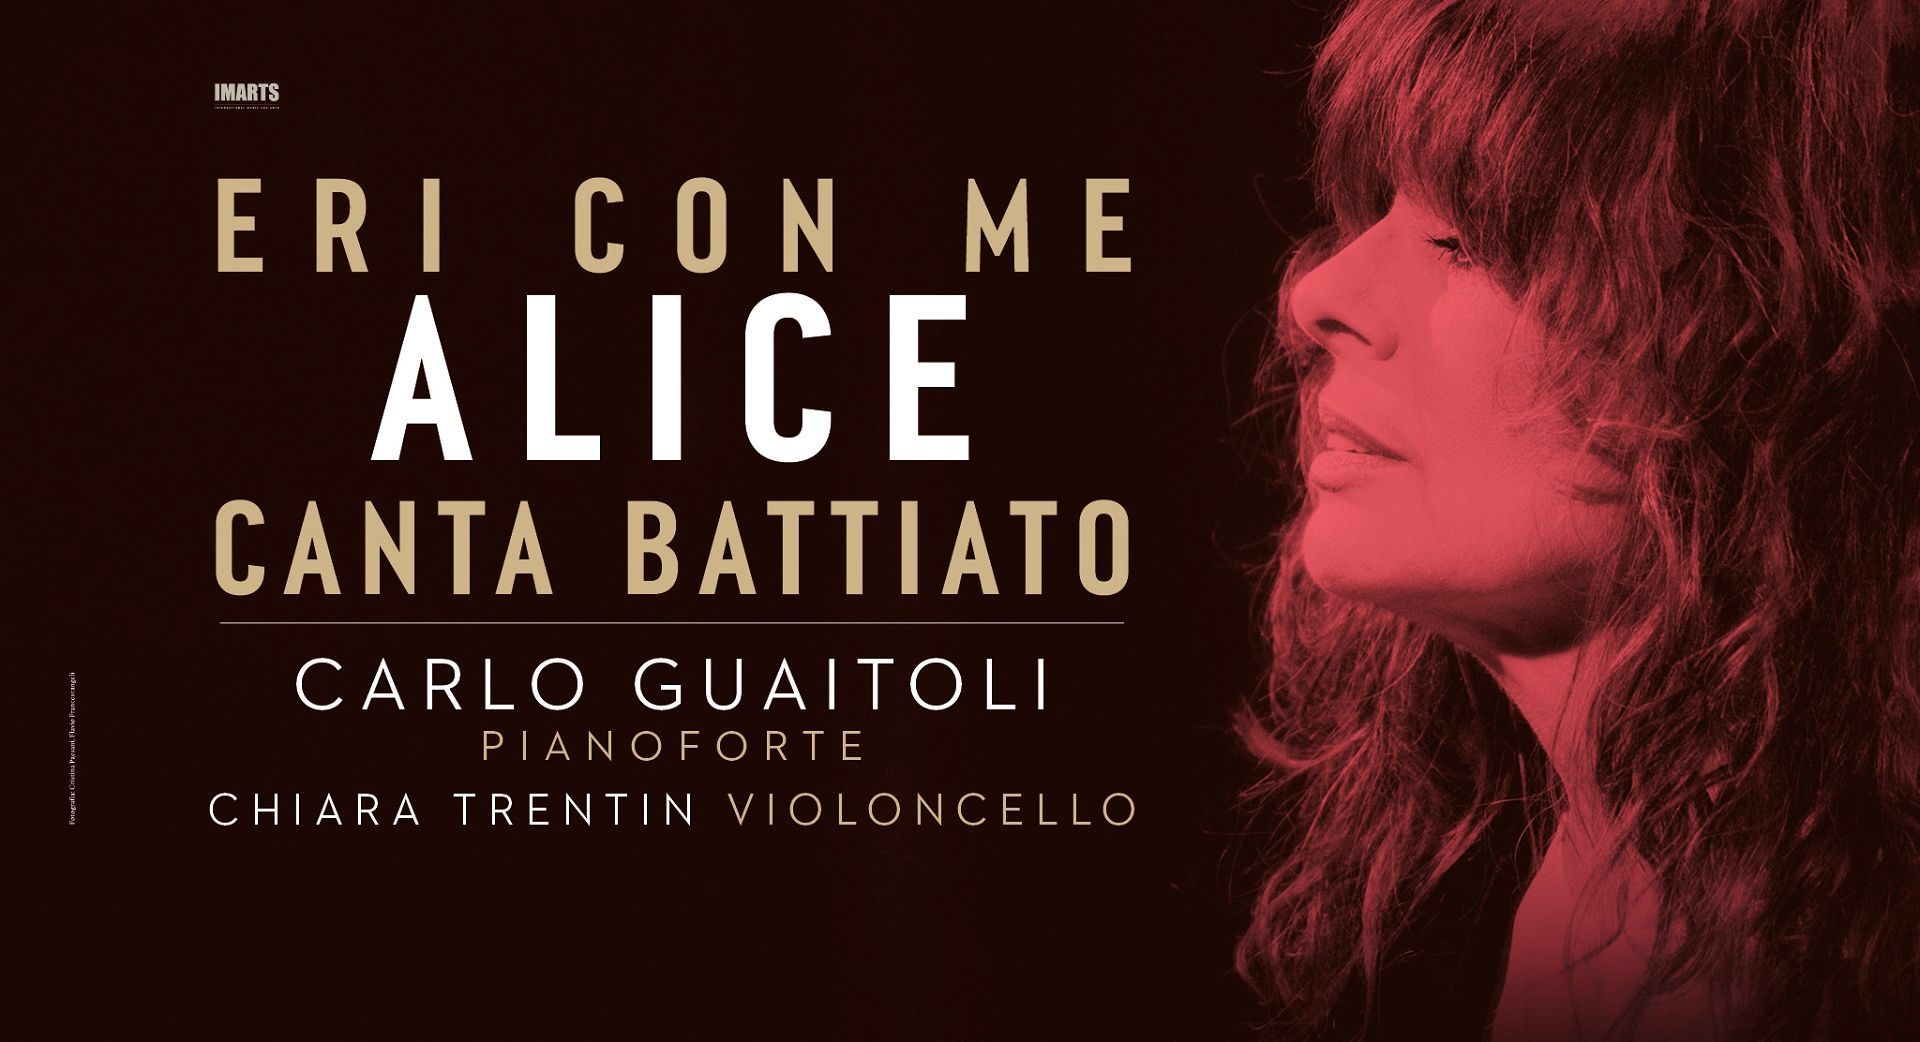 Gran finale di stagione al Teatro Verdi di Gorizia con Alice canta Battiato.